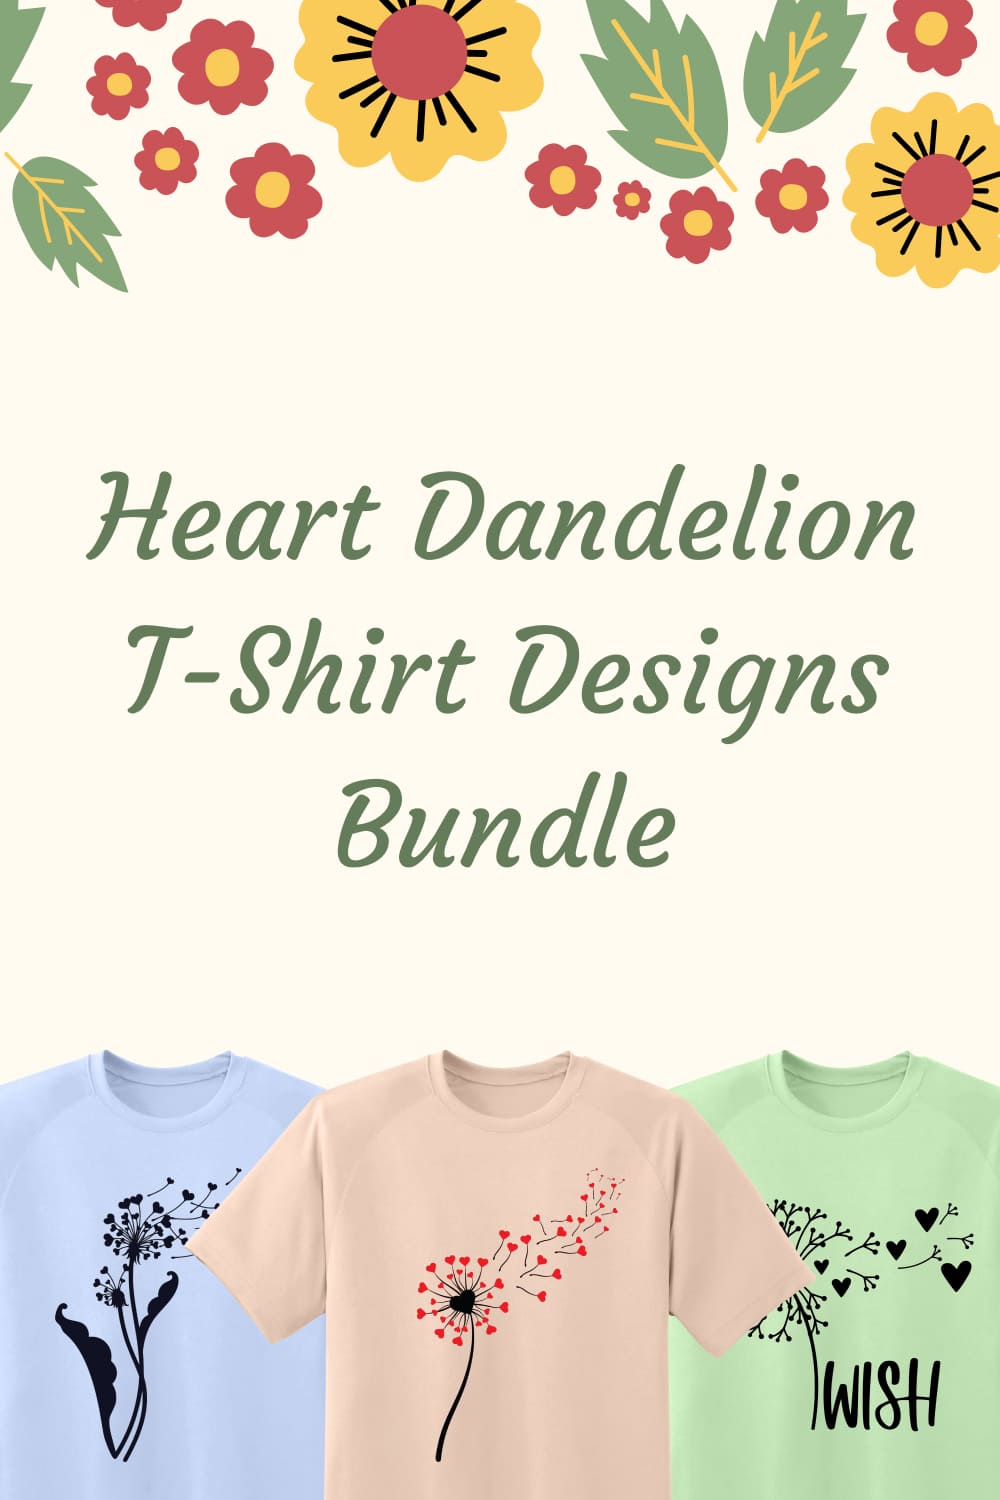 Heart Dandelion T-shirt Designs Bundle - Pinterest.